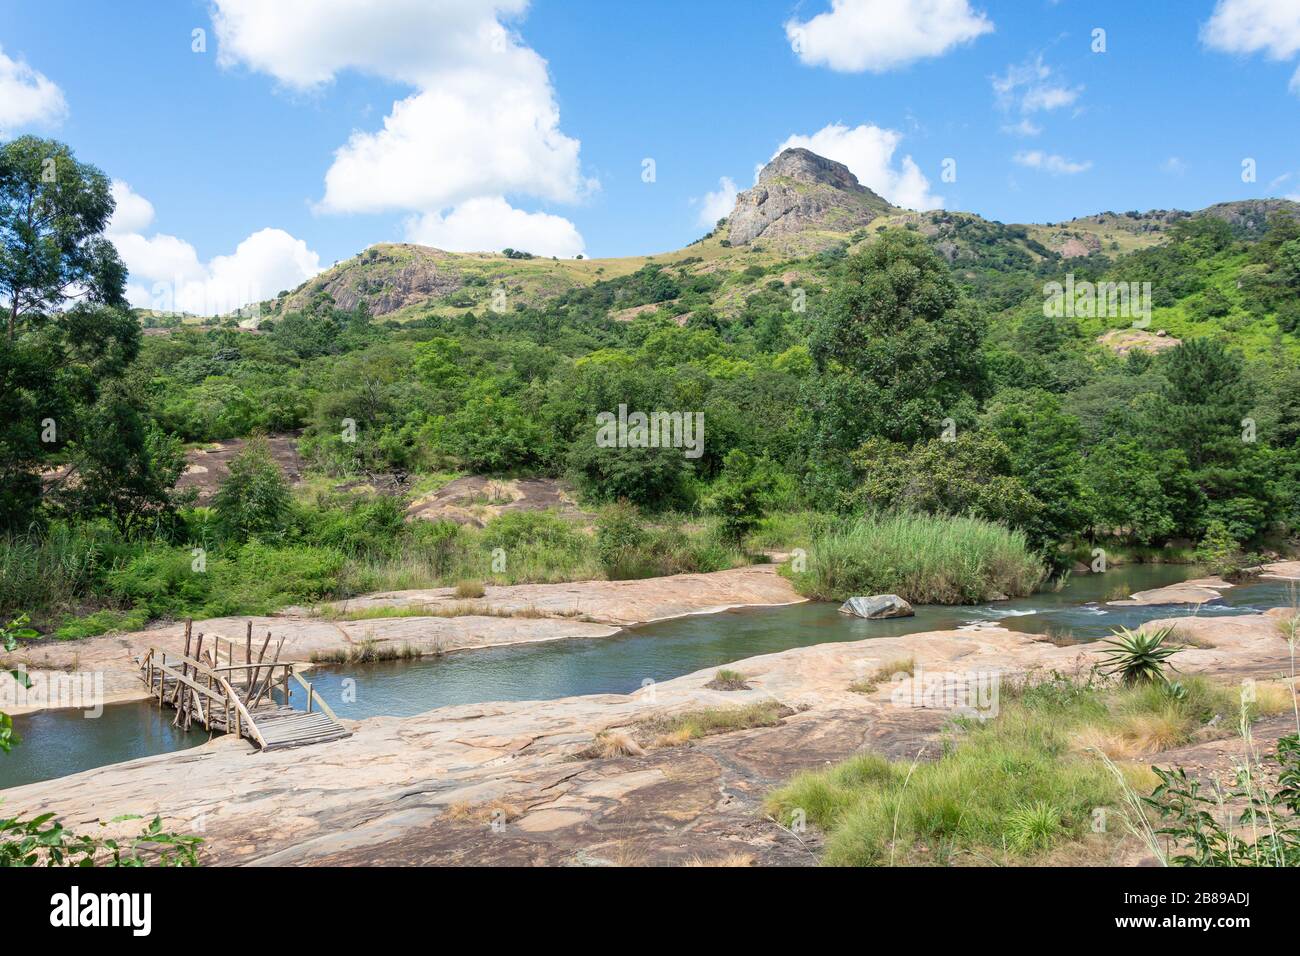 Paysage de montagne et rivière Luushwana à la réserve naturelle de Mantenga, Lobamba, vallée d'Ezulwini, région de Hhohho, Royaume d'Eswatini (Swaziland) Banque D'Images